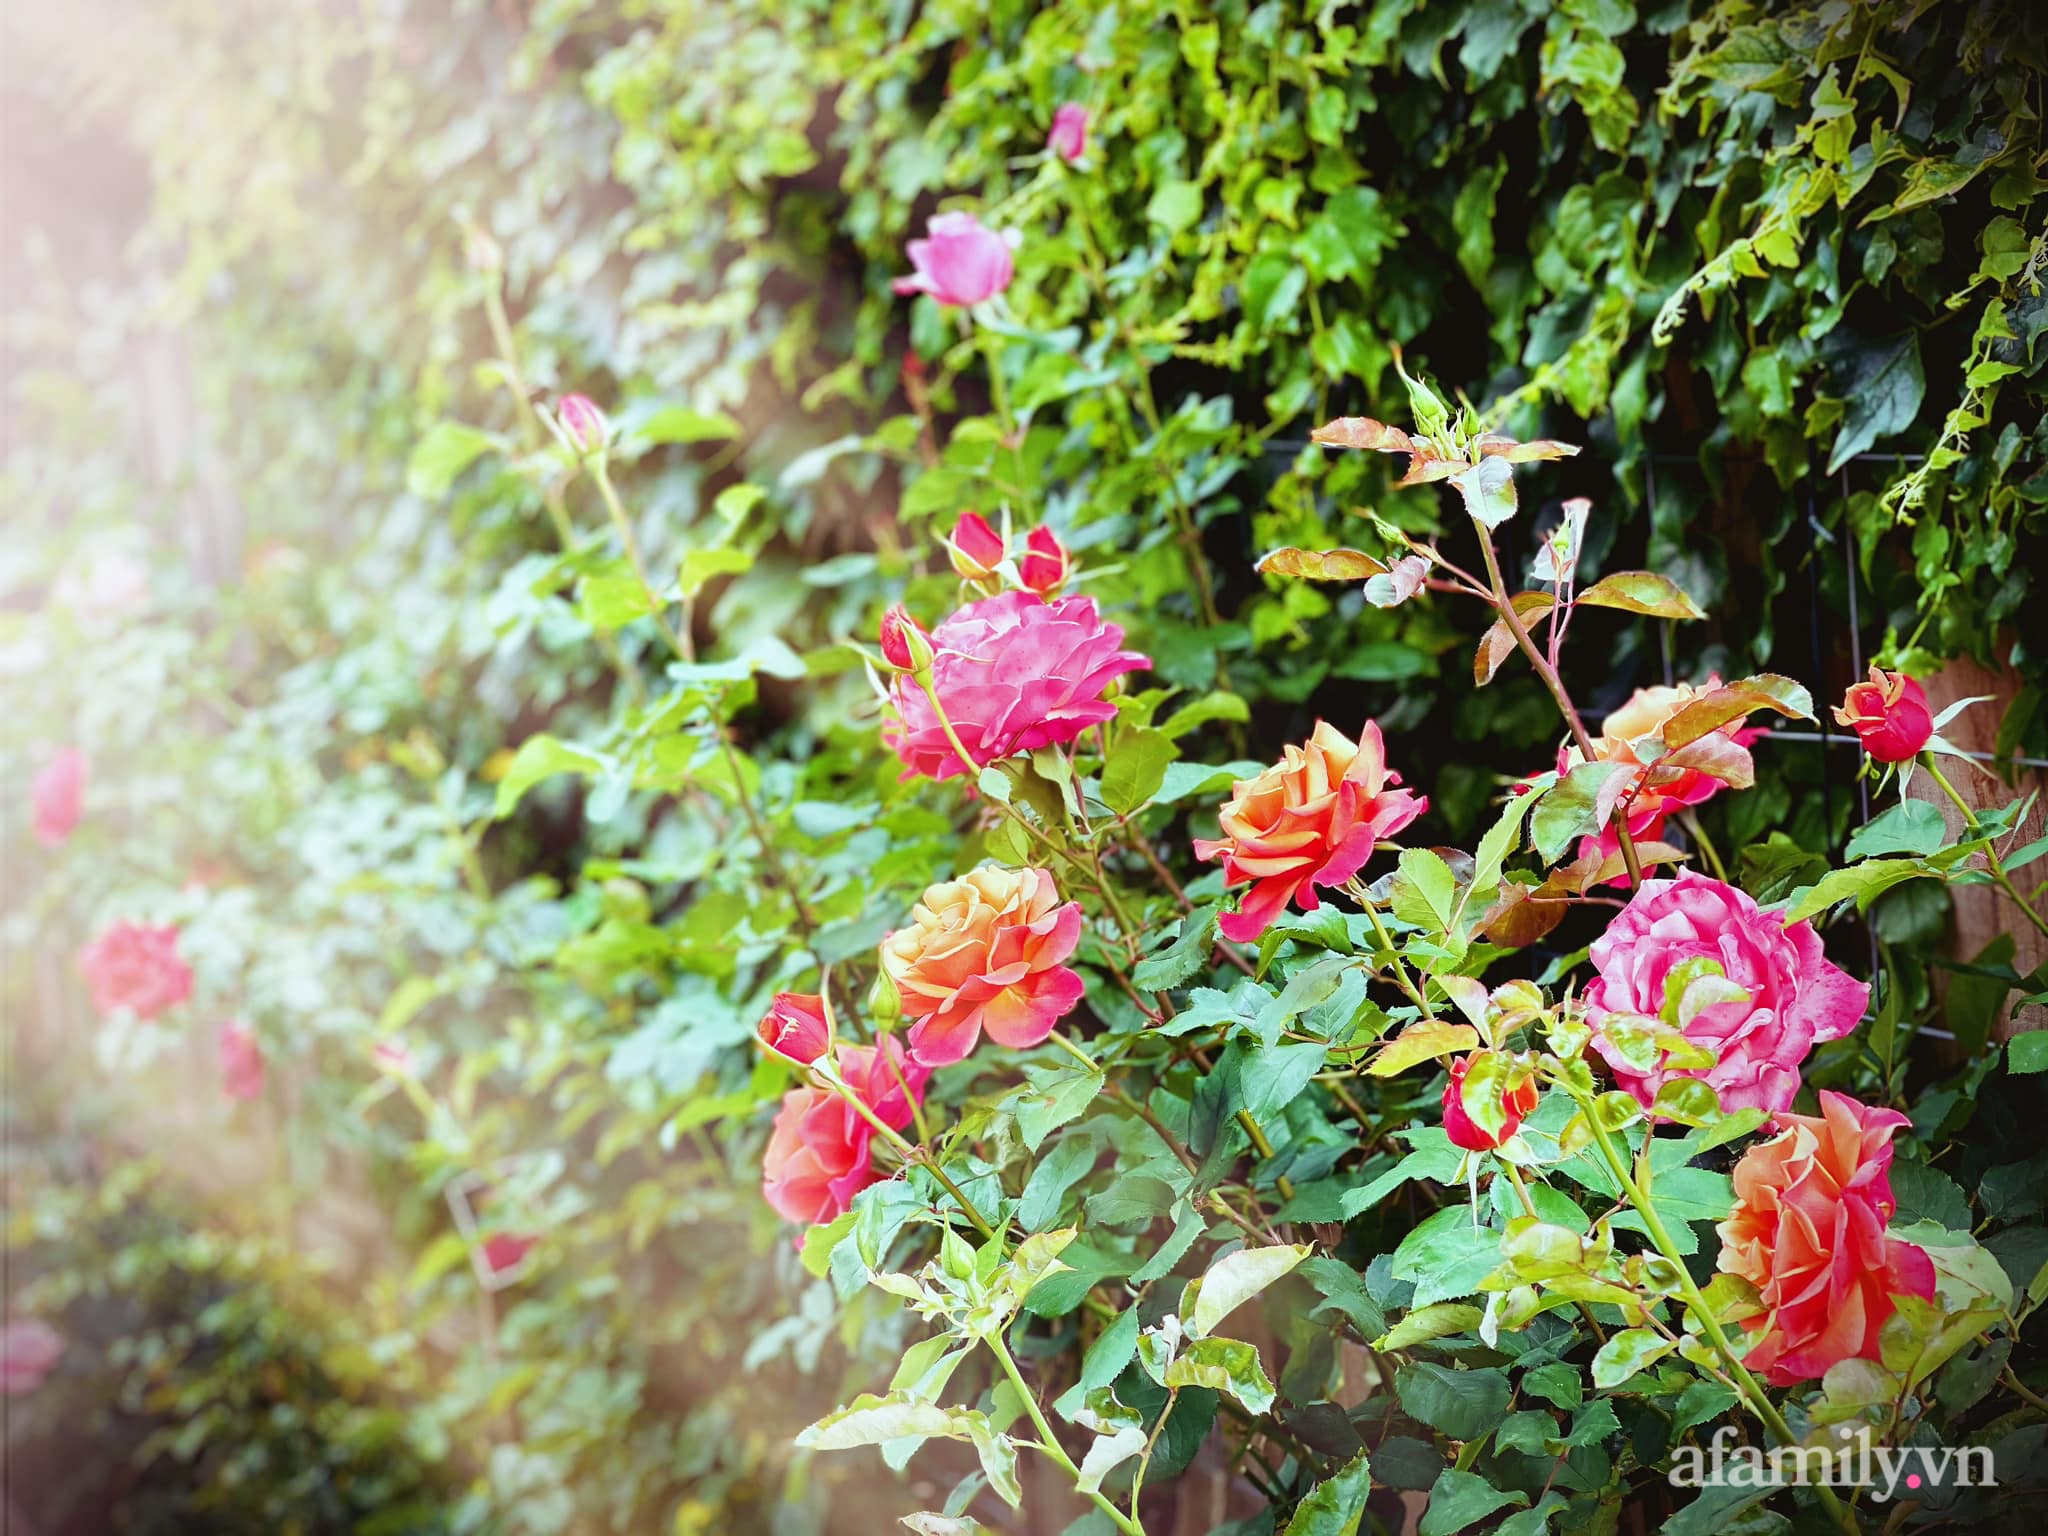 Vườn hồng 250m² ngát hương rực rỡ sắc màu đẹp như cổ tích của mẹ Việt ở Úc - Ảnh 9.